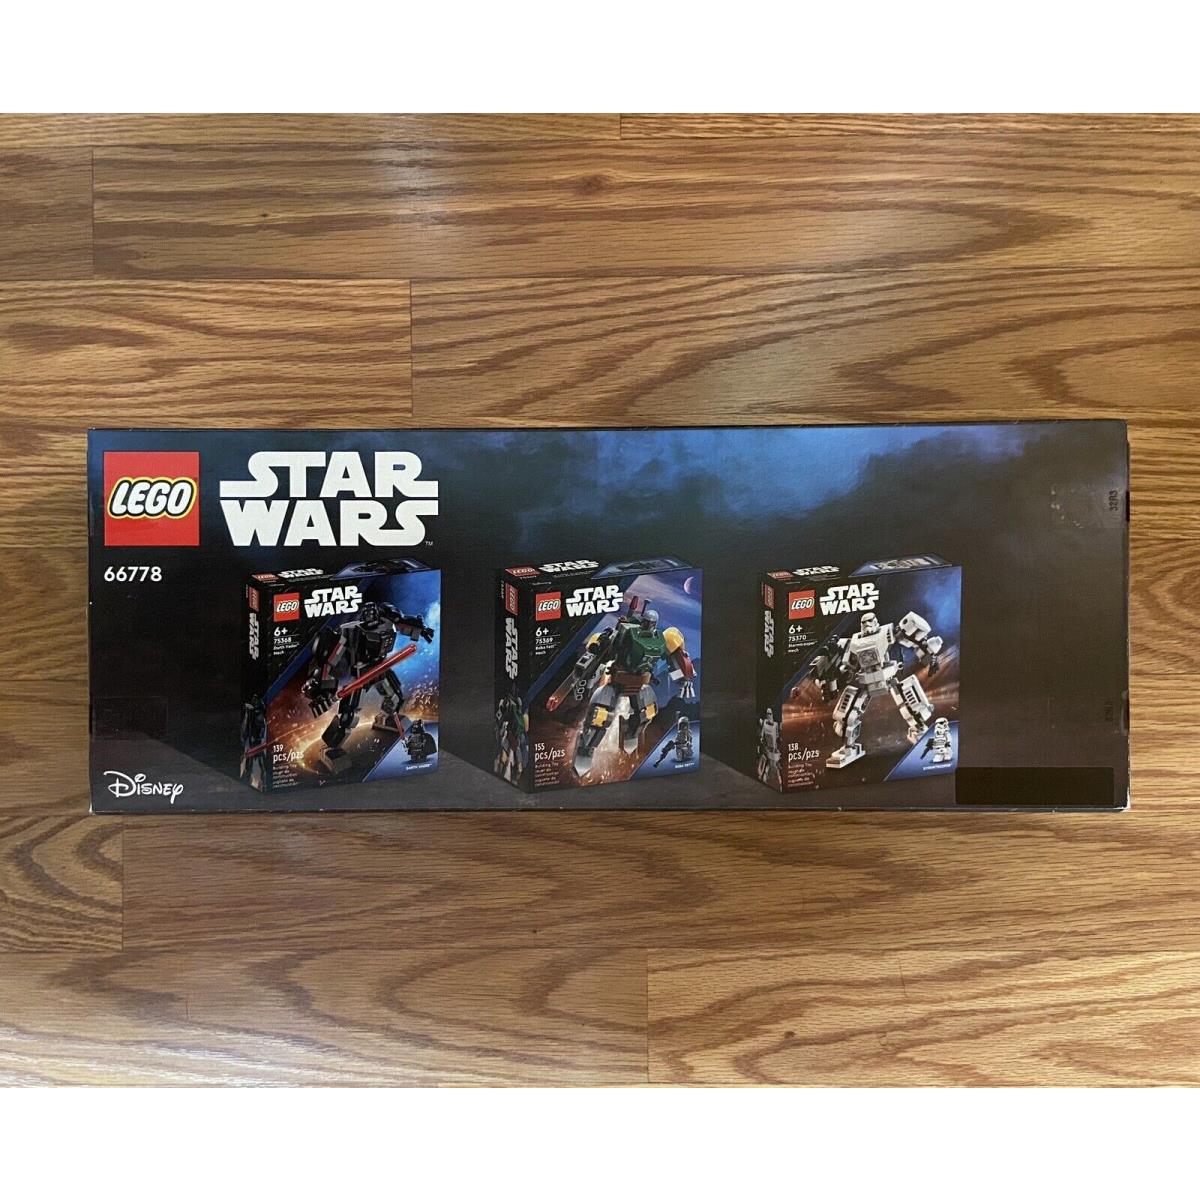 Lego Star Wars 66778 Mech 3 Pack Darth Vader Boba Fett Stormtrooper